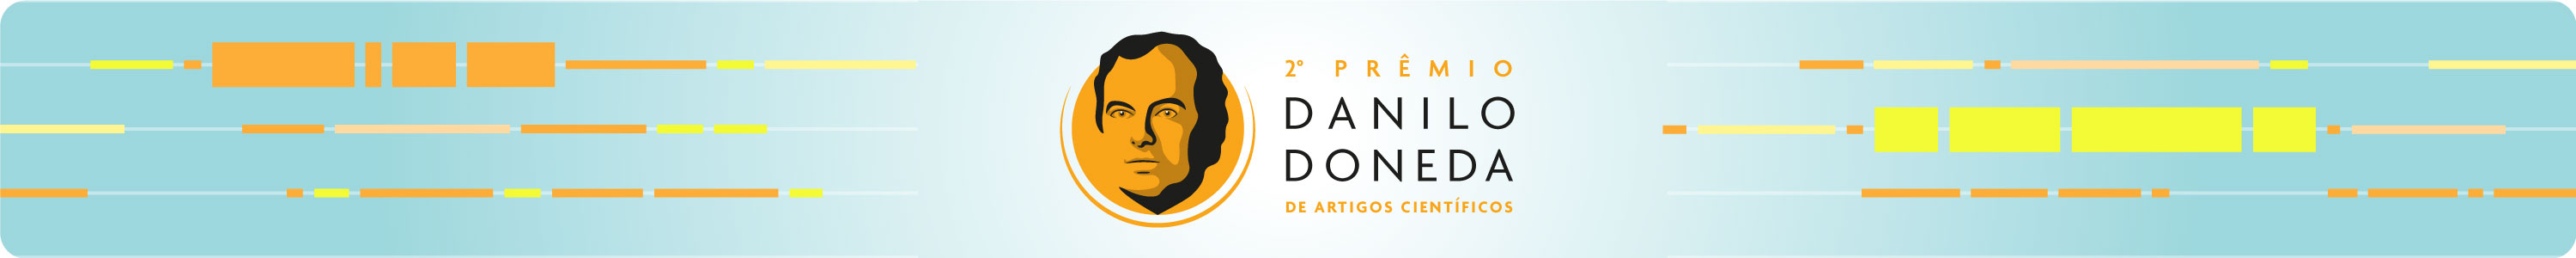 II Prêmio Danilo Doneda de Artigos Científicos